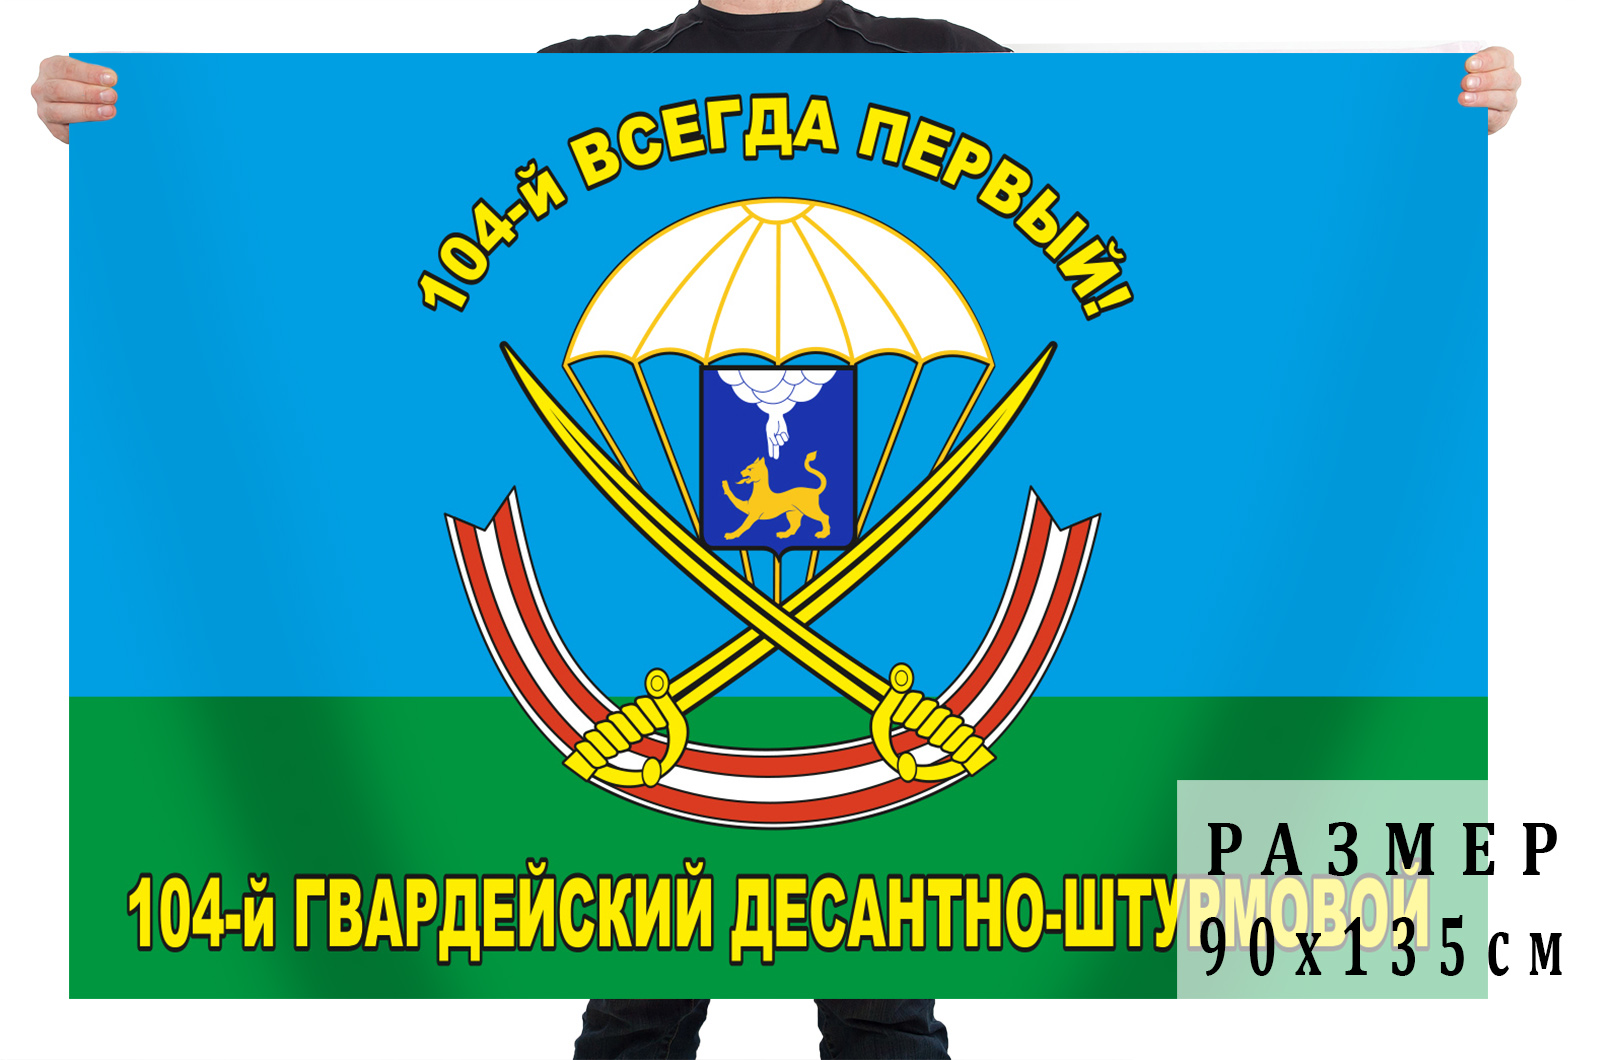 104 десантный полк. 104 Полк ВДВ Череха Знамя полка. Флаг 104 ДШП Череха. 104 Гв ДШП. 104-Й Гвардейский десантно-штурмовой полк.